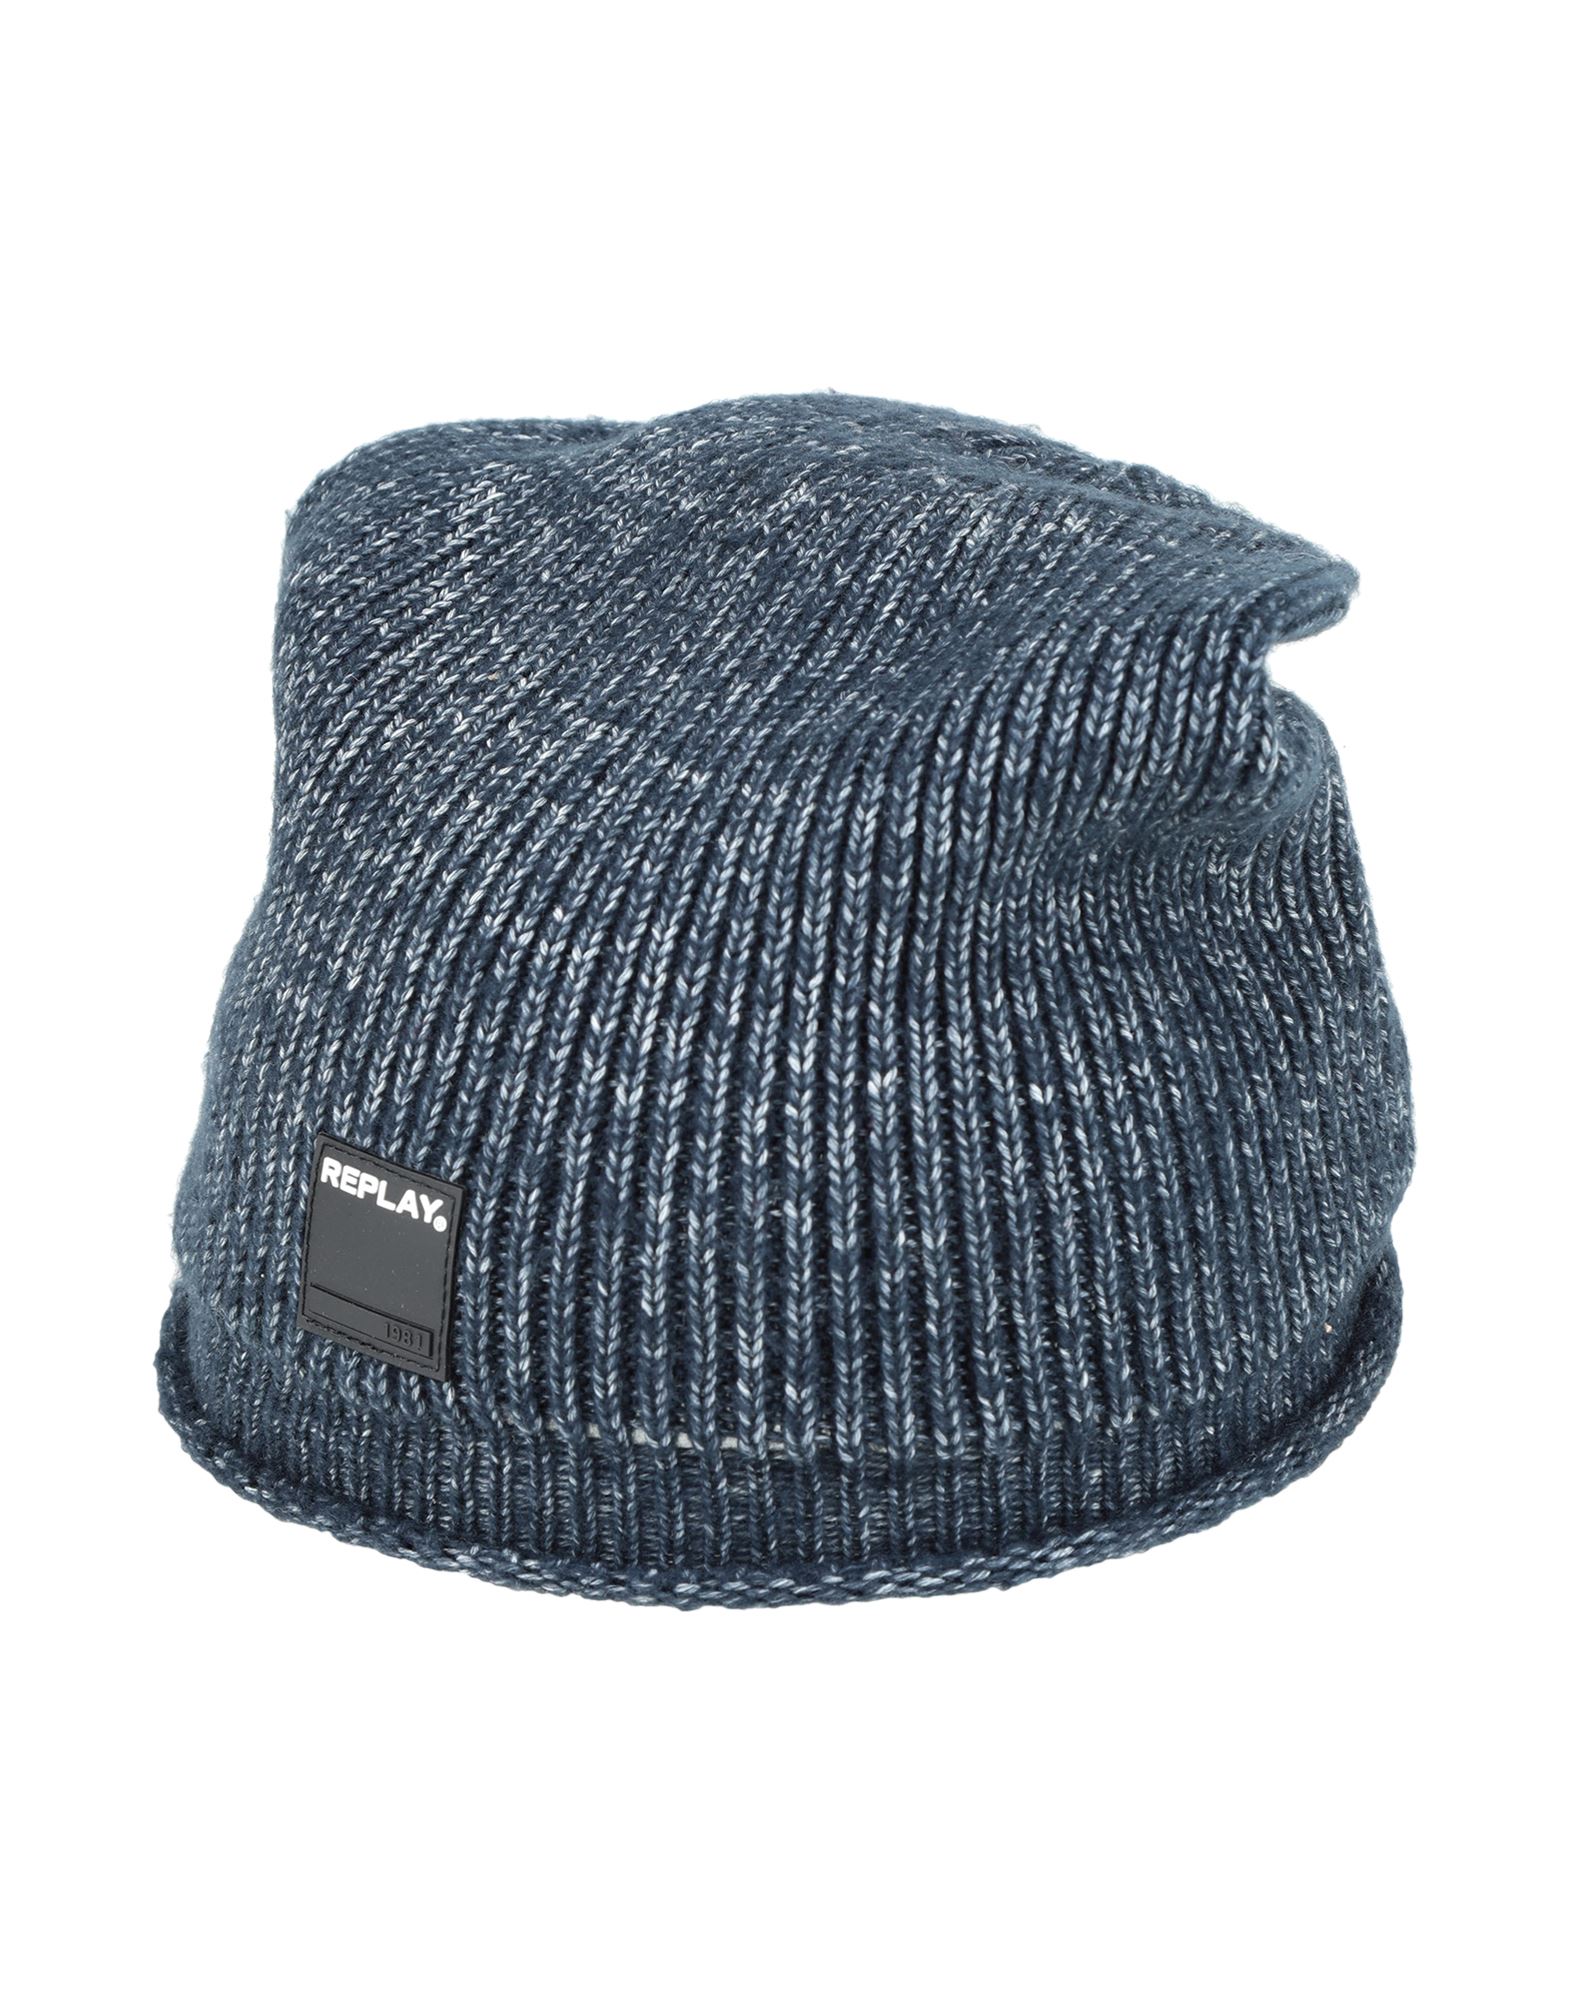 最適な価格 CHARM イスラムワッチ 帽子 フリーサイズ 全6色展開 透かし編み 薄手 ニット帽 キャップ 夏 メンズ レディース